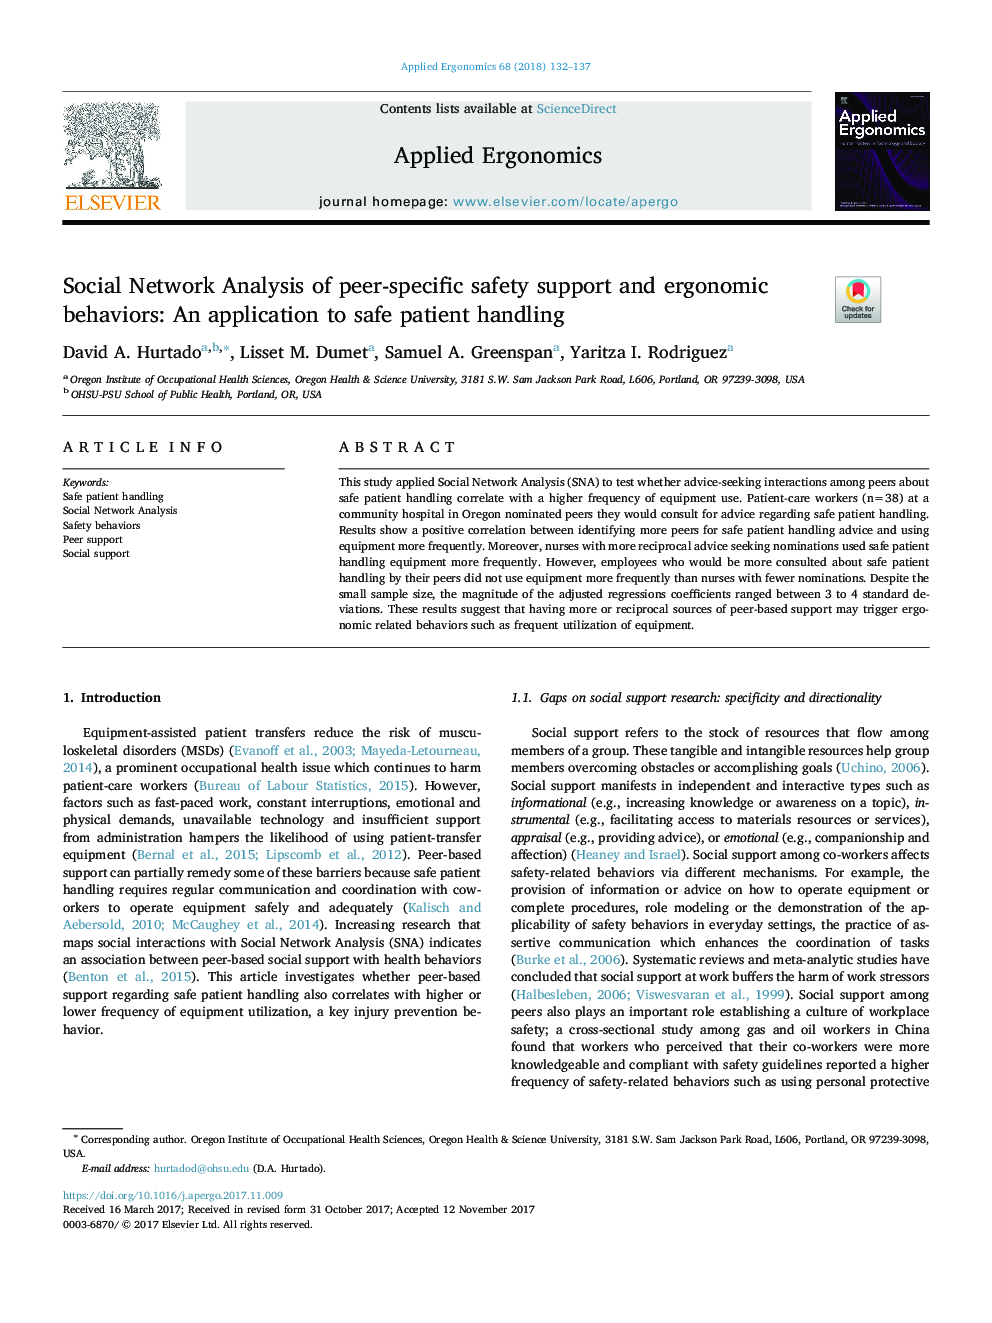 تجزیه و تحلیل شبکه های اجتماعی پشتیبانی ایمنی خاص و رفتارهای ارگونومی: یک برنامه کاربردی برای دست زدن به بیمار ایمن 